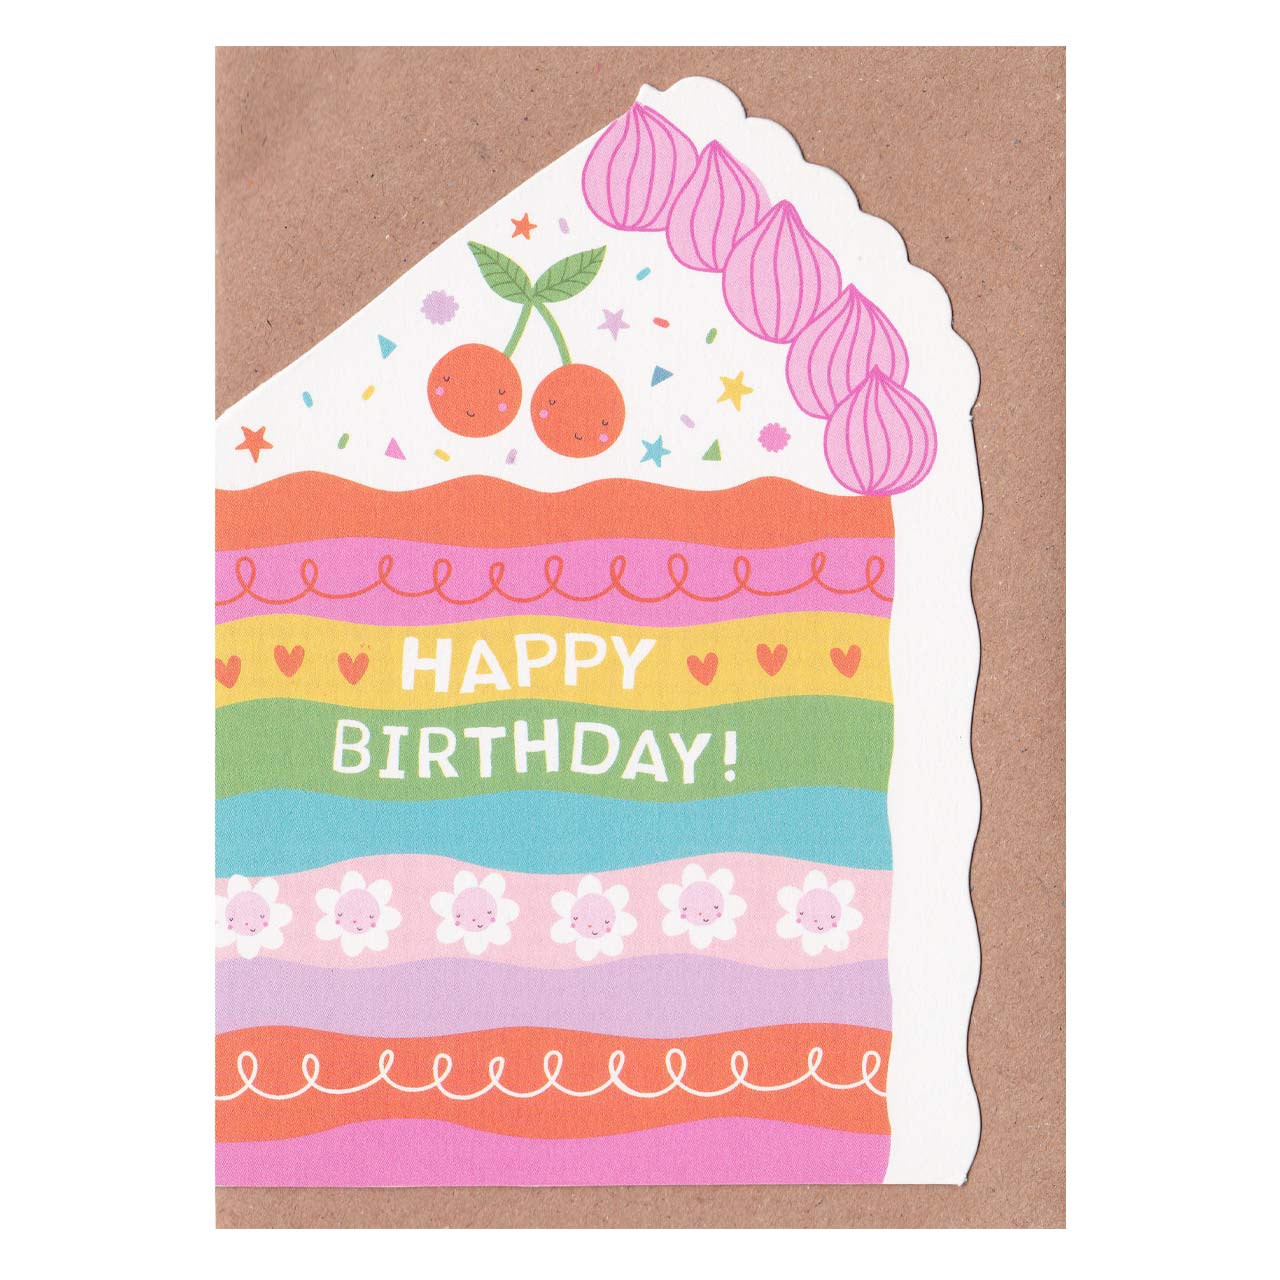 Birthday Cake Slice Die Cut Card